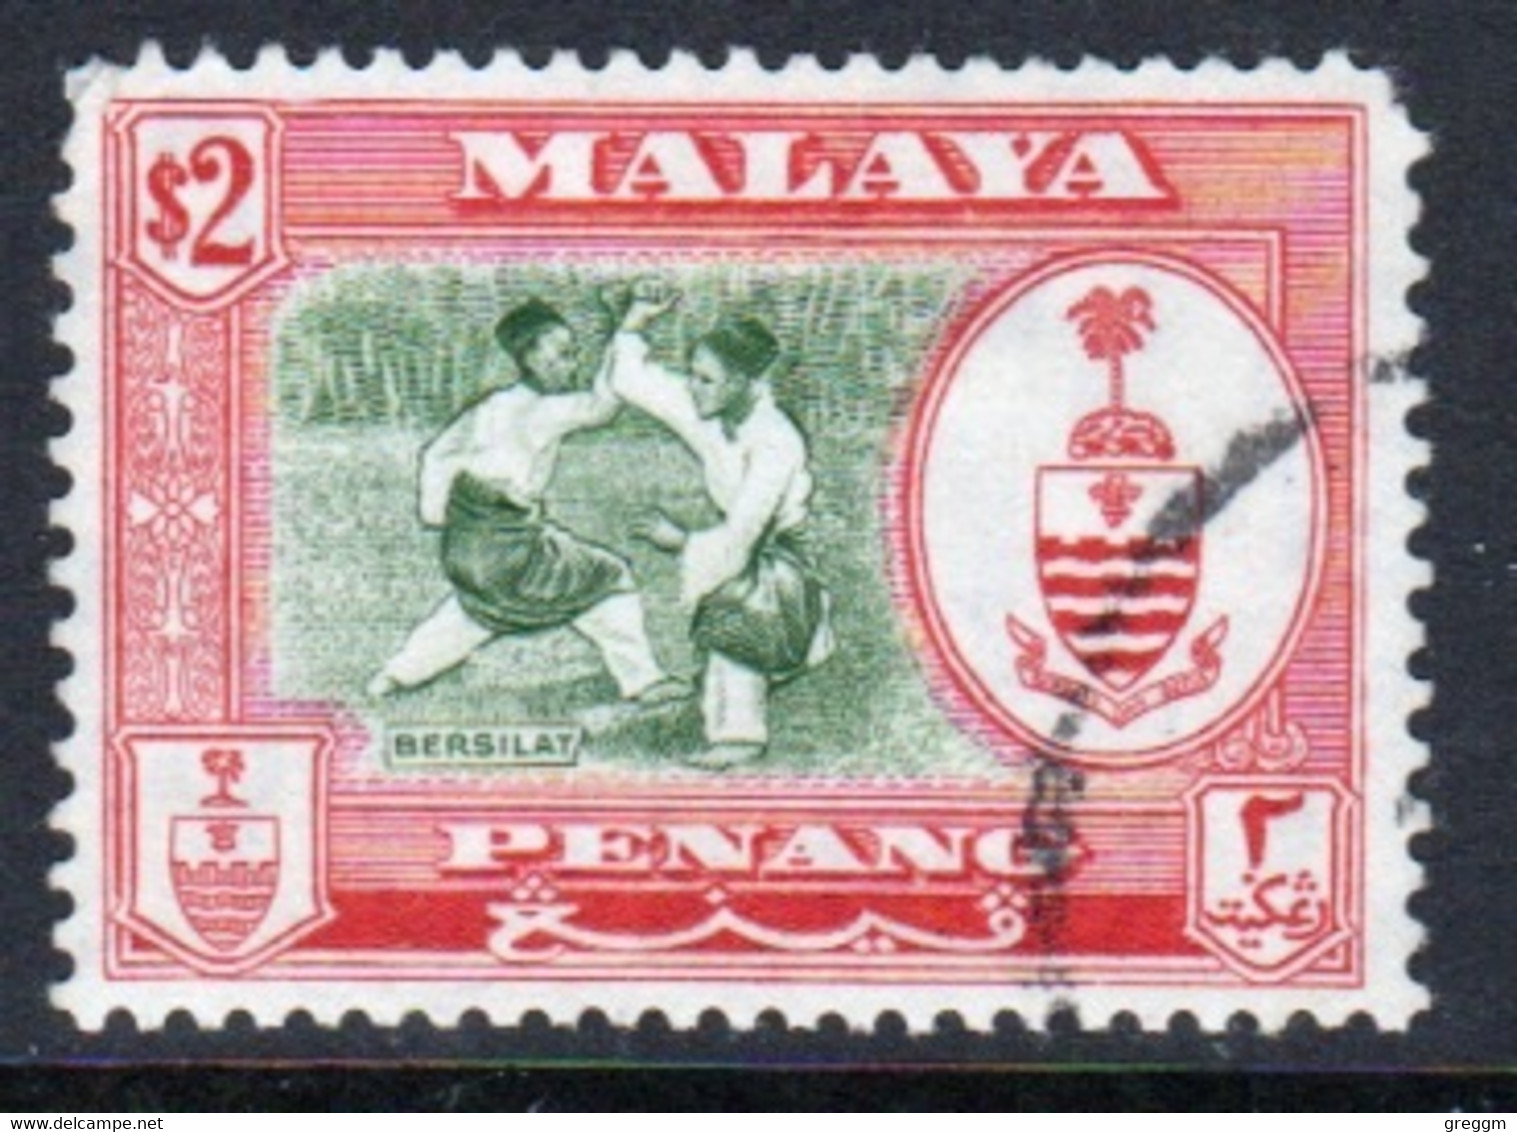 Malaya Penang 1960 Queen Elizabeth II Single $2 Stamp In Used - Penang